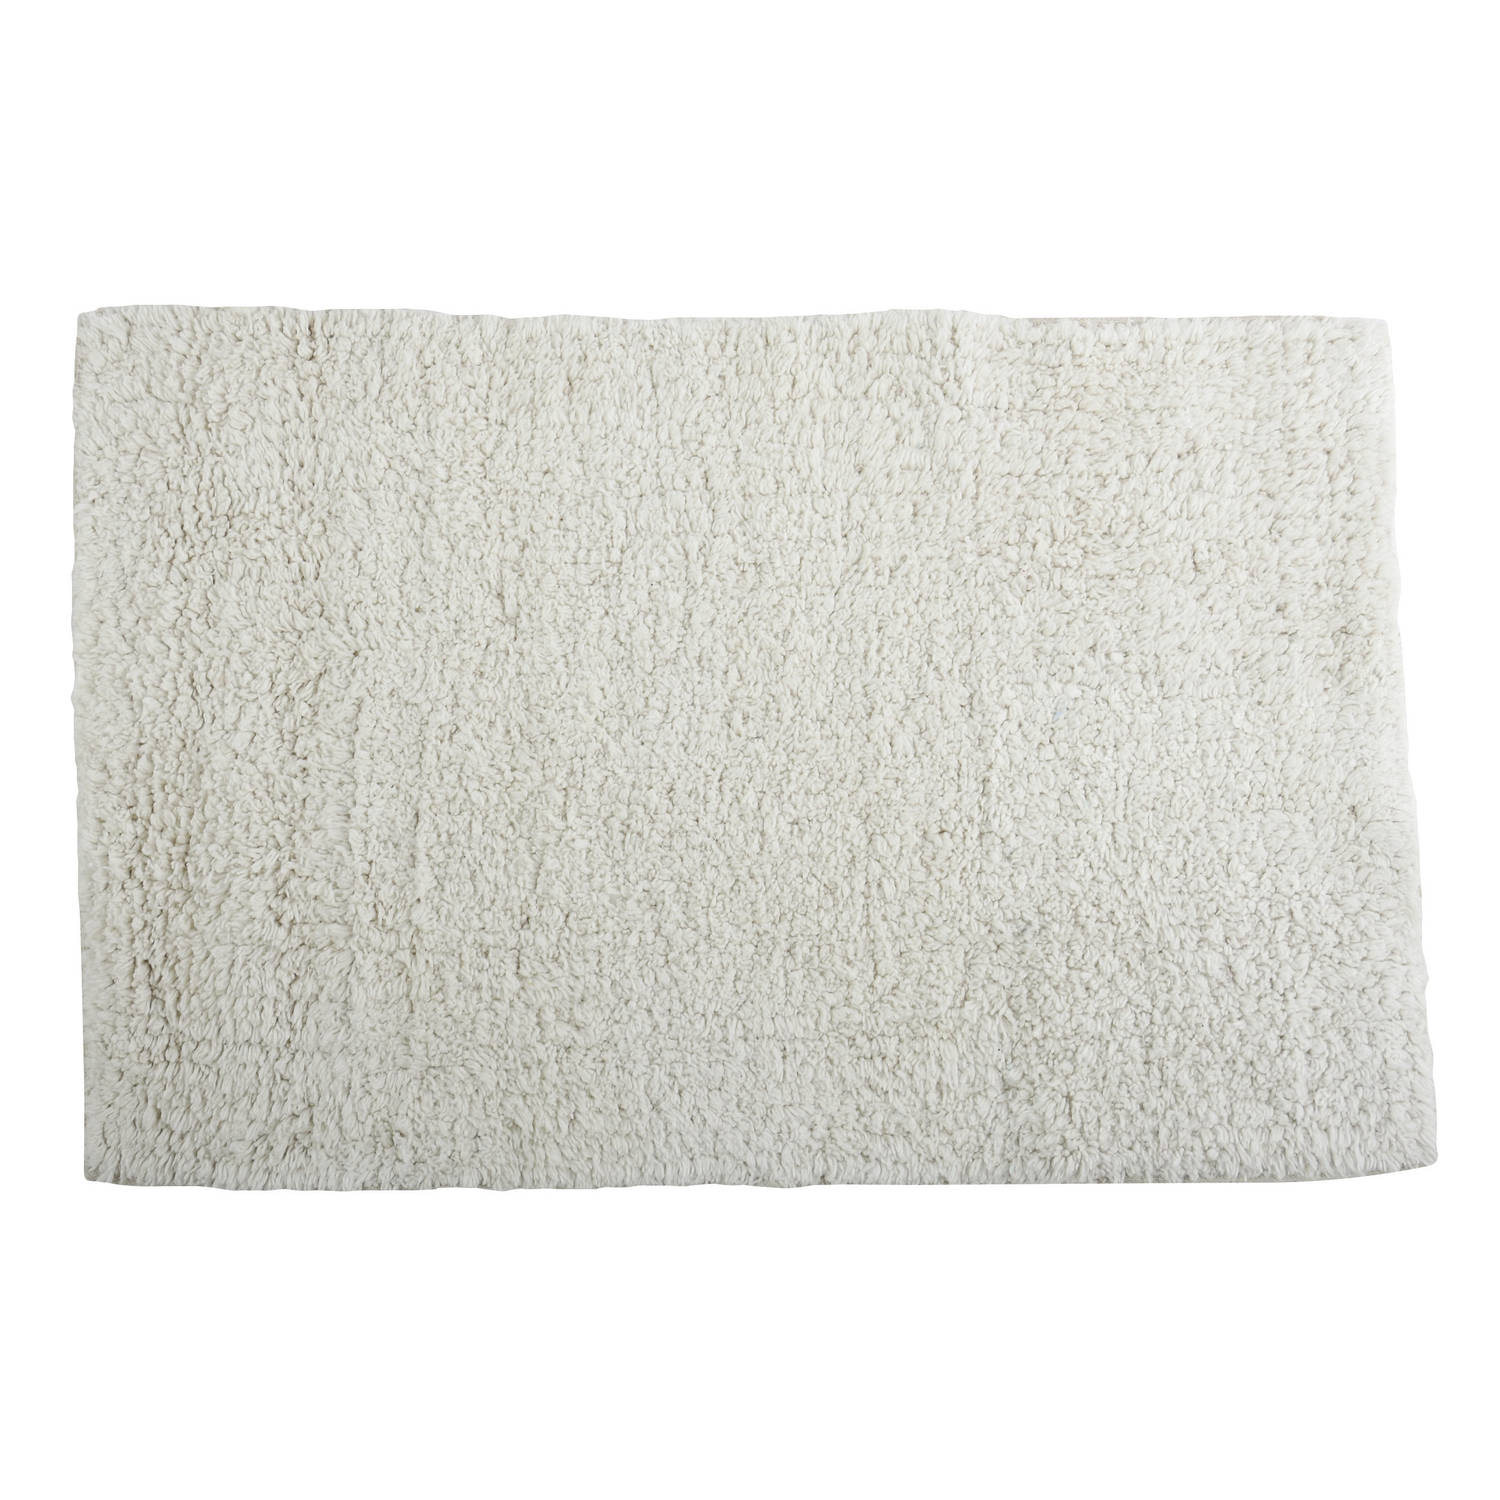 MSV Badkamerkleedje-badmat tapijt voor de vloer ivoor wit 40 x 60 cm Badmatjes